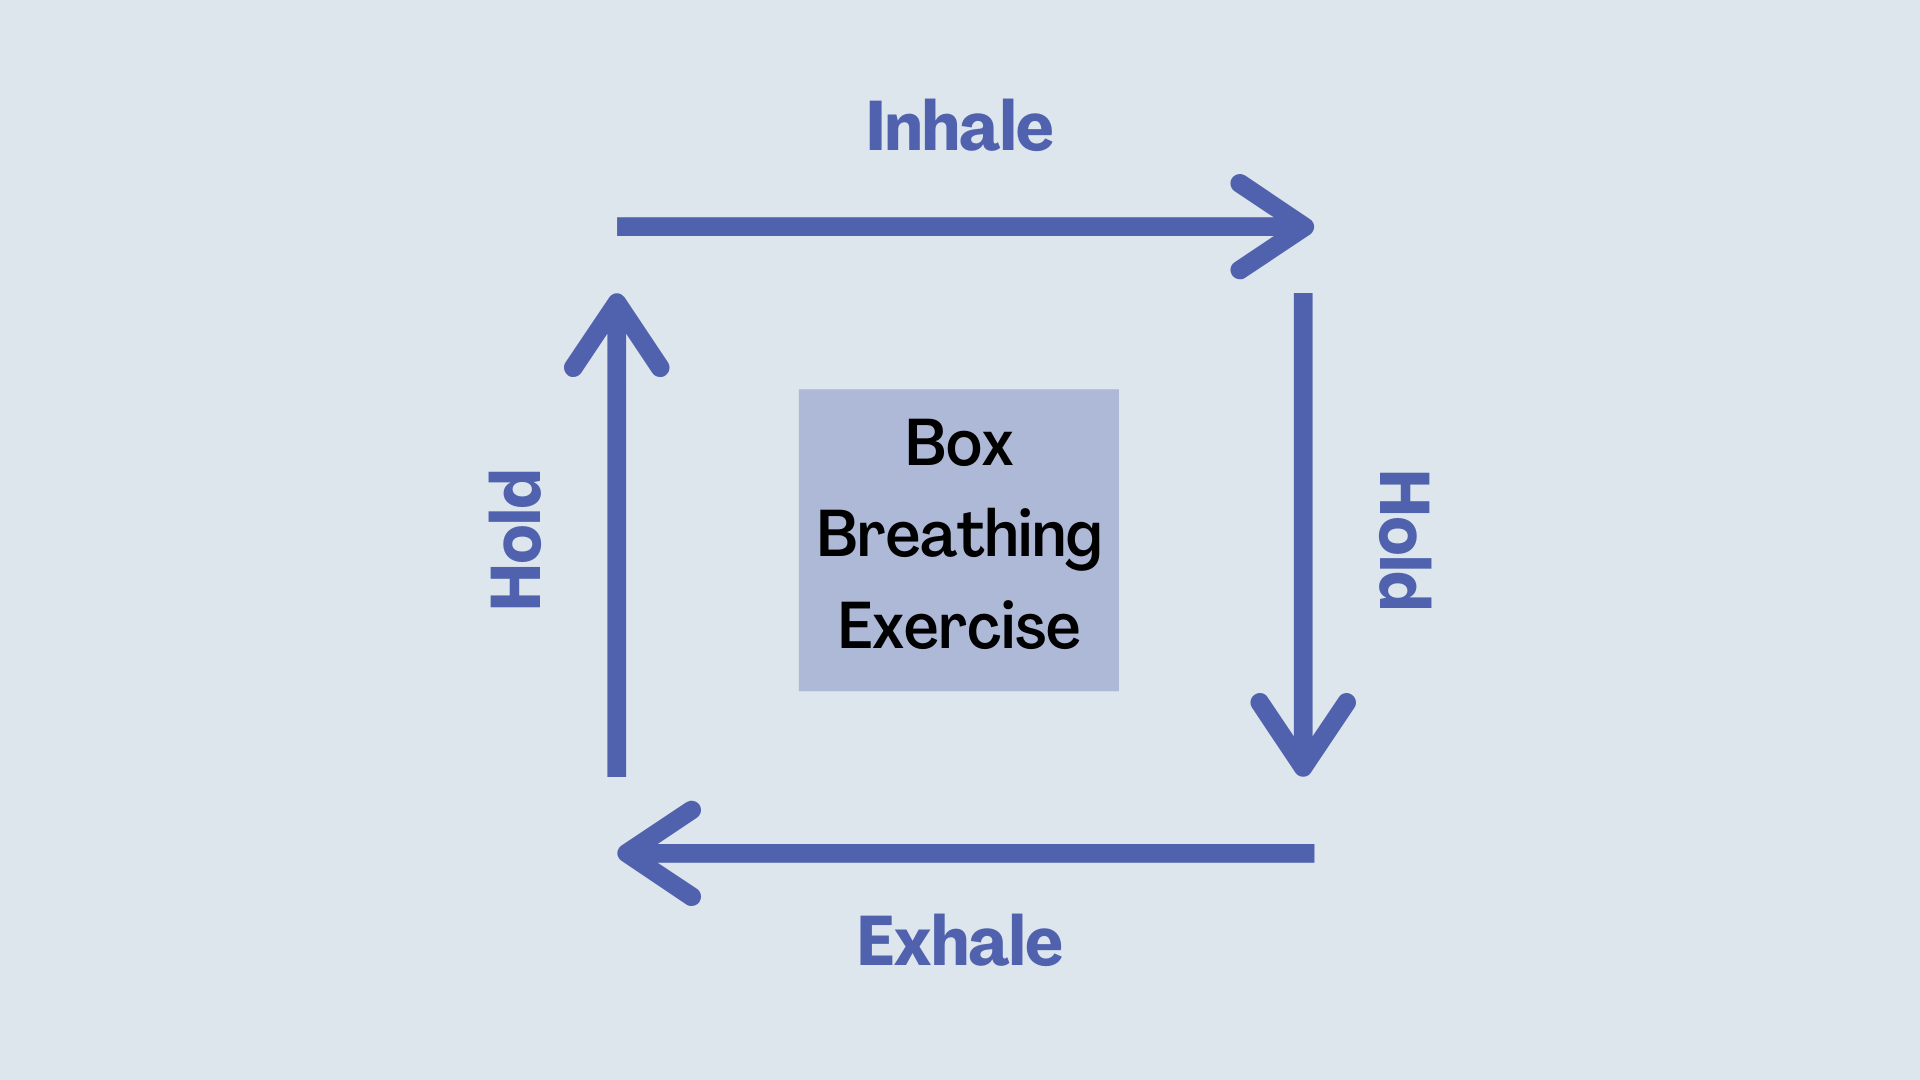 Box Breathing Exercise